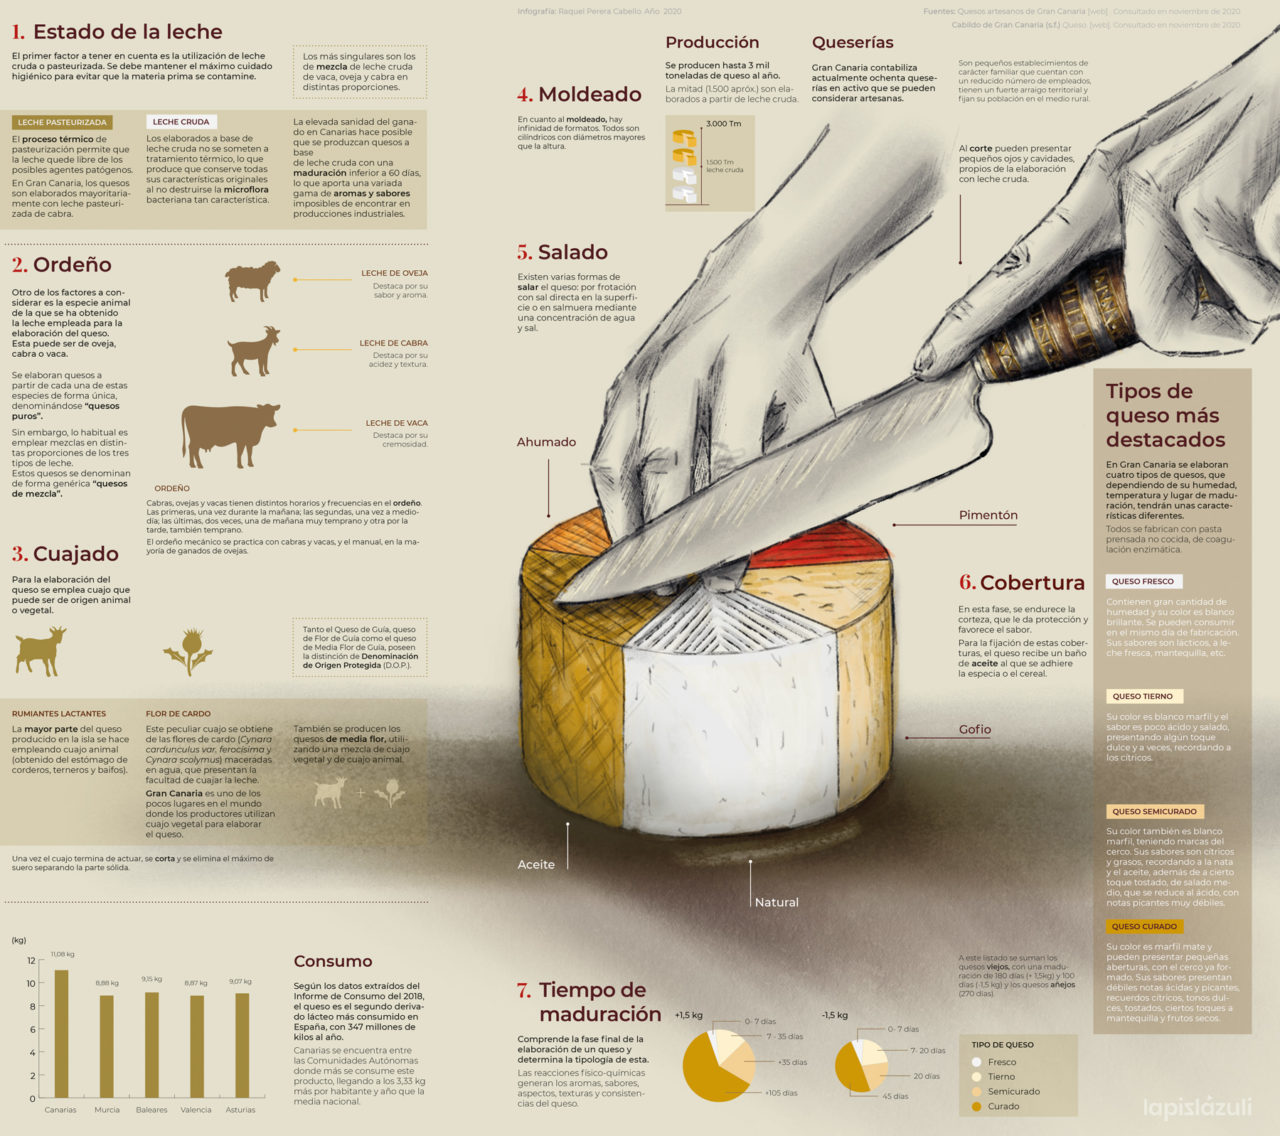 elaboración del queso en Gran Canaria